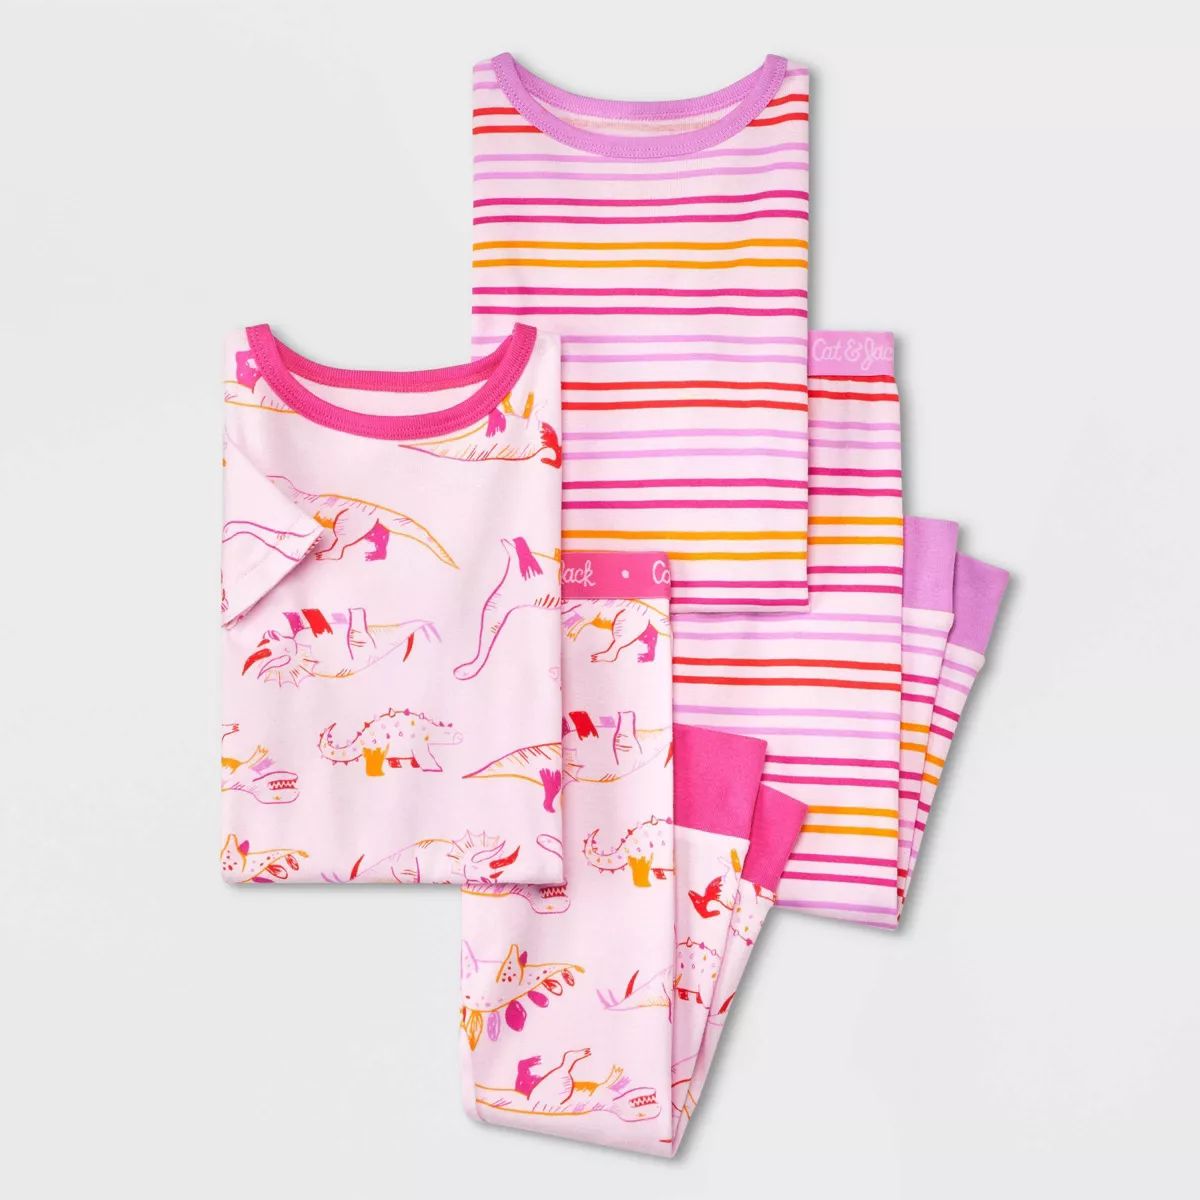 Toddler Girls' 4pc Dinosaur & Striped Pajama Set - Cat & Jack™ Pink | Target